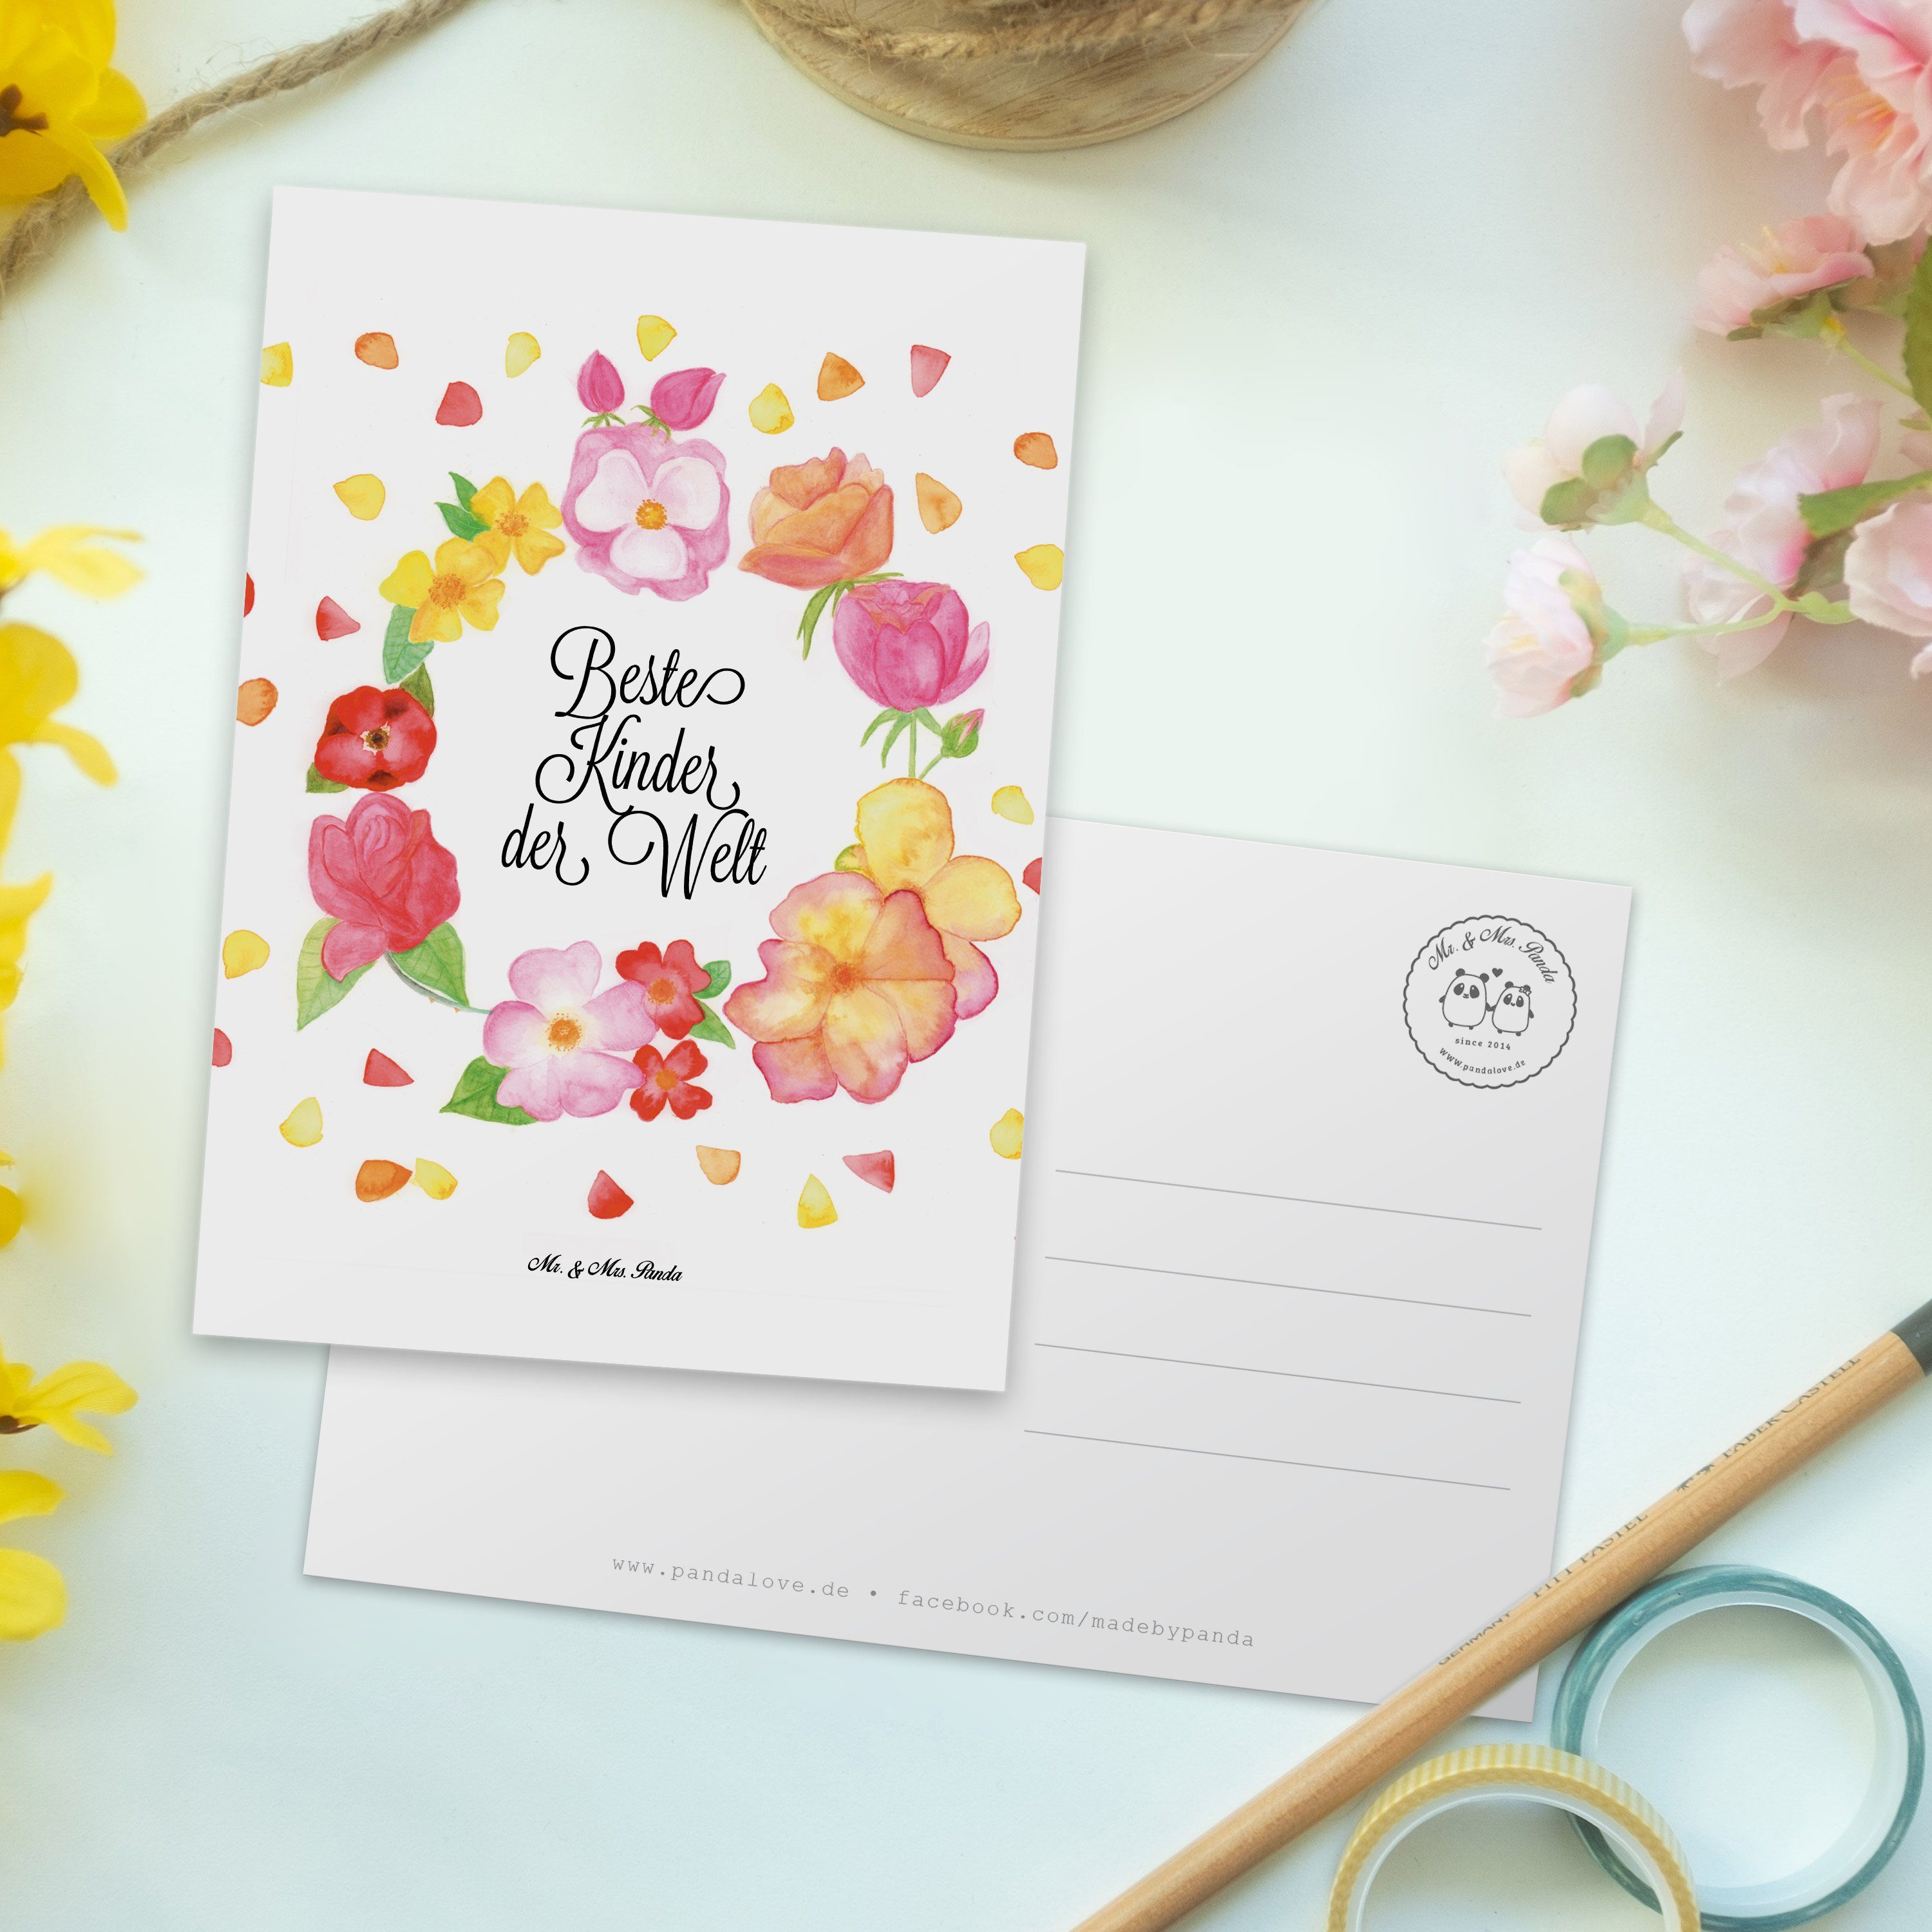 Mr. & Mrs. Panda - Weiß Blumen Geschenk, - Postkarte Liebe Kinder Einladungska Flower, Liebling